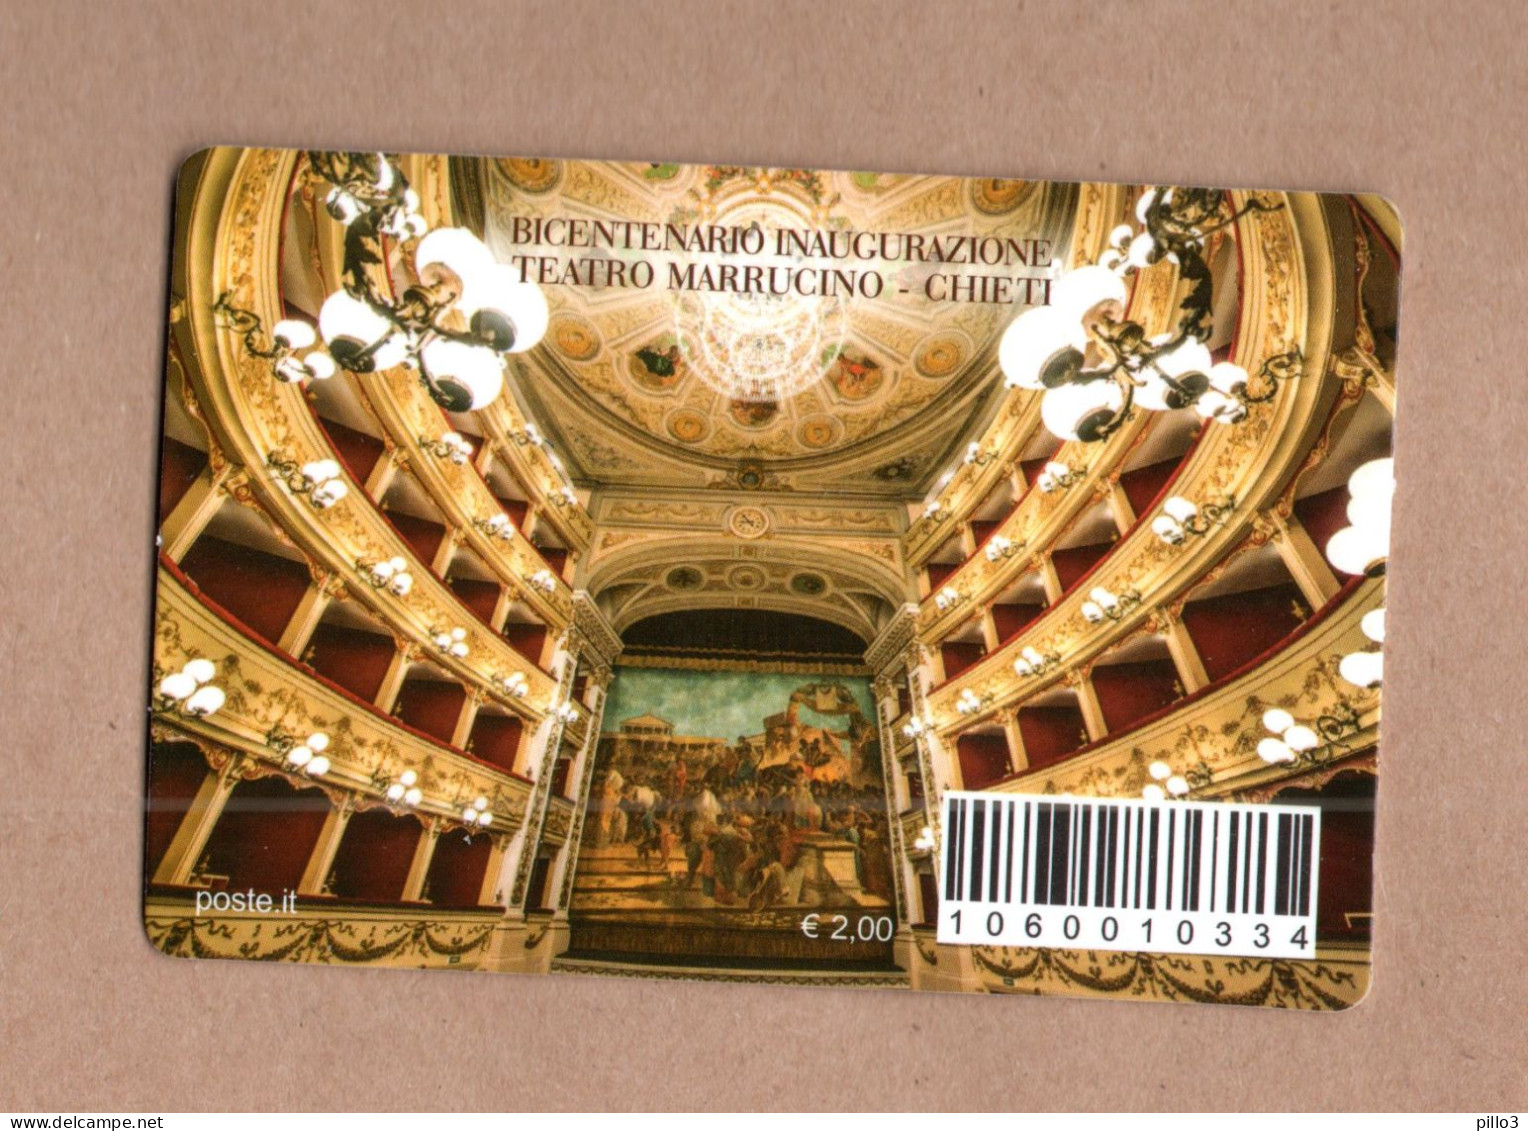 ITALIA - Tessera Filatelica : Teatro Marrucino - Chieti   11.05.2018 - Philatelic Cards